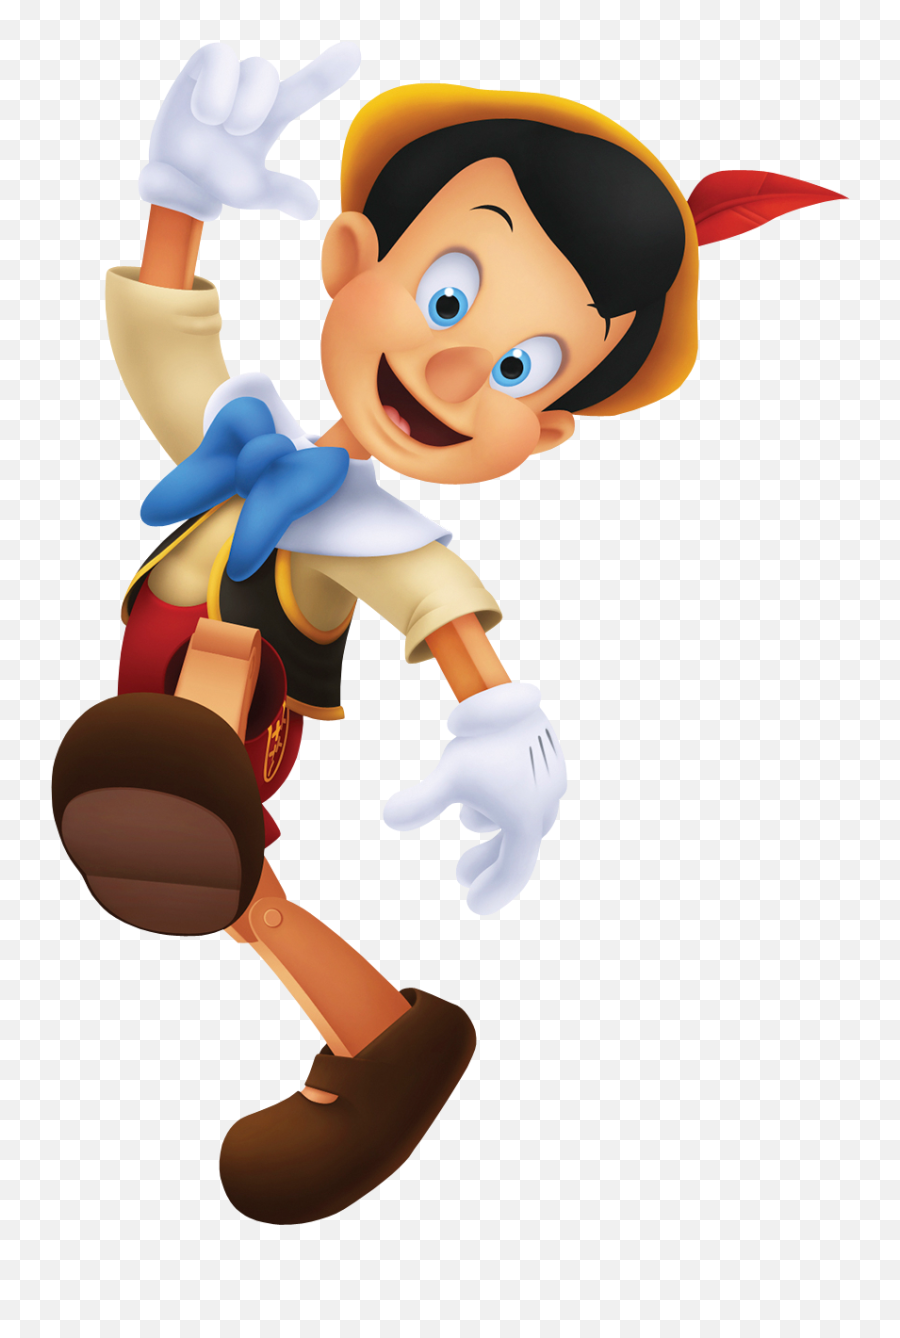 Pinocchio - Kingdom Hearts Disney Pinocchio Emoji,Pinocchio Png